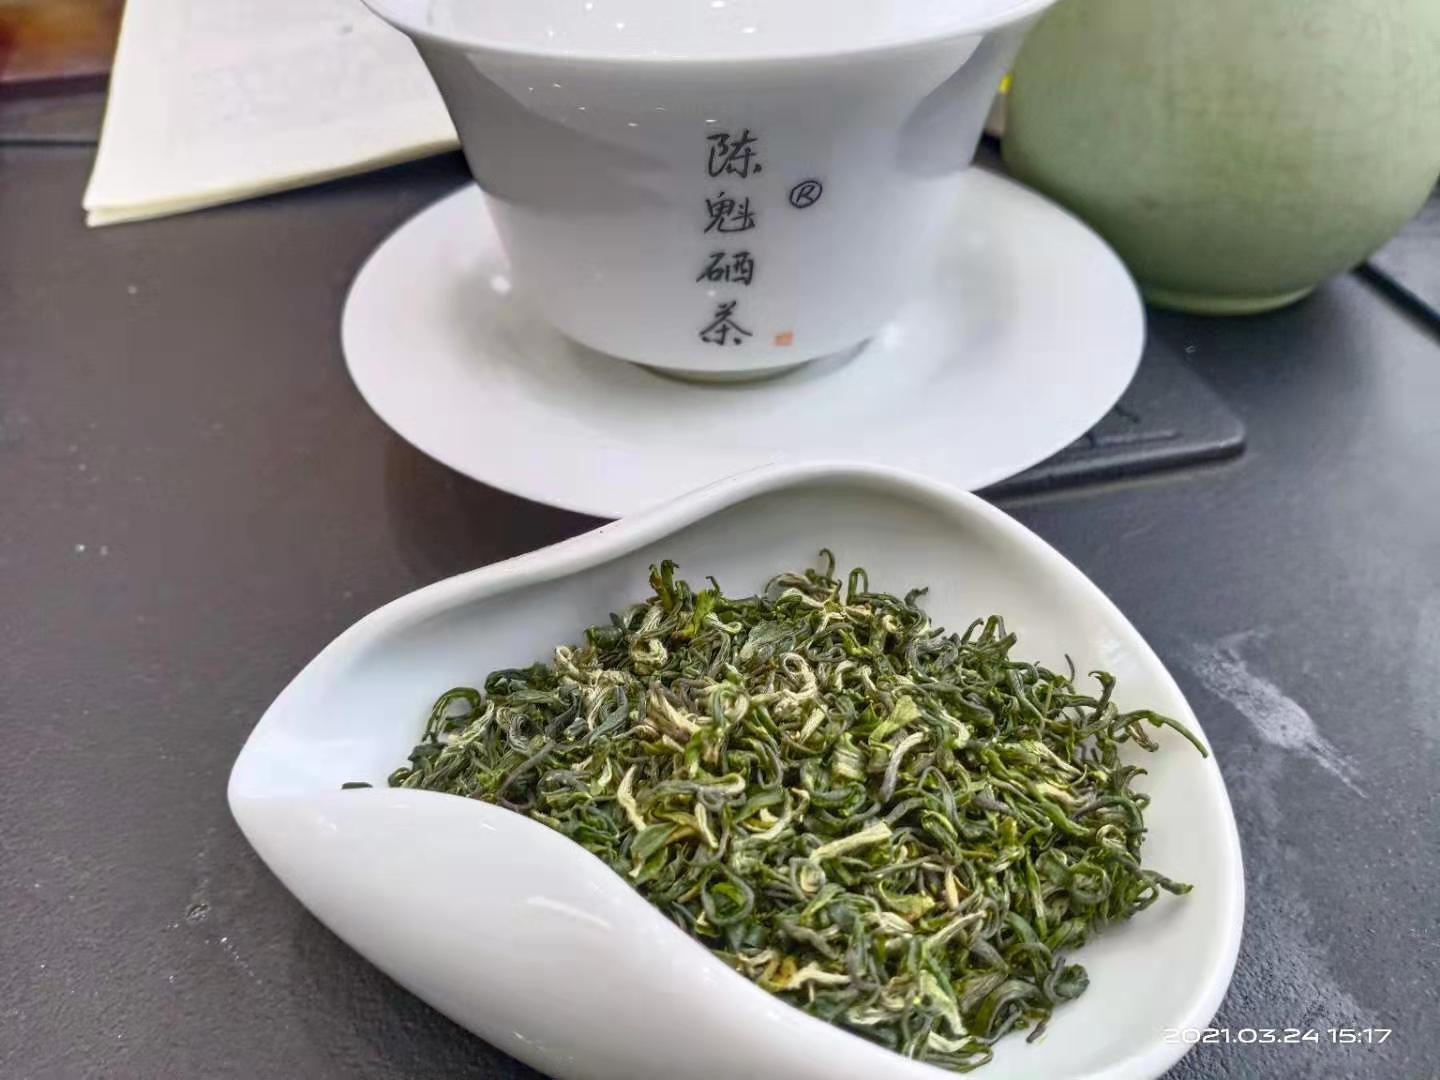 海南蜂蜜绿茶供应,茉莉绿茶批发厂家